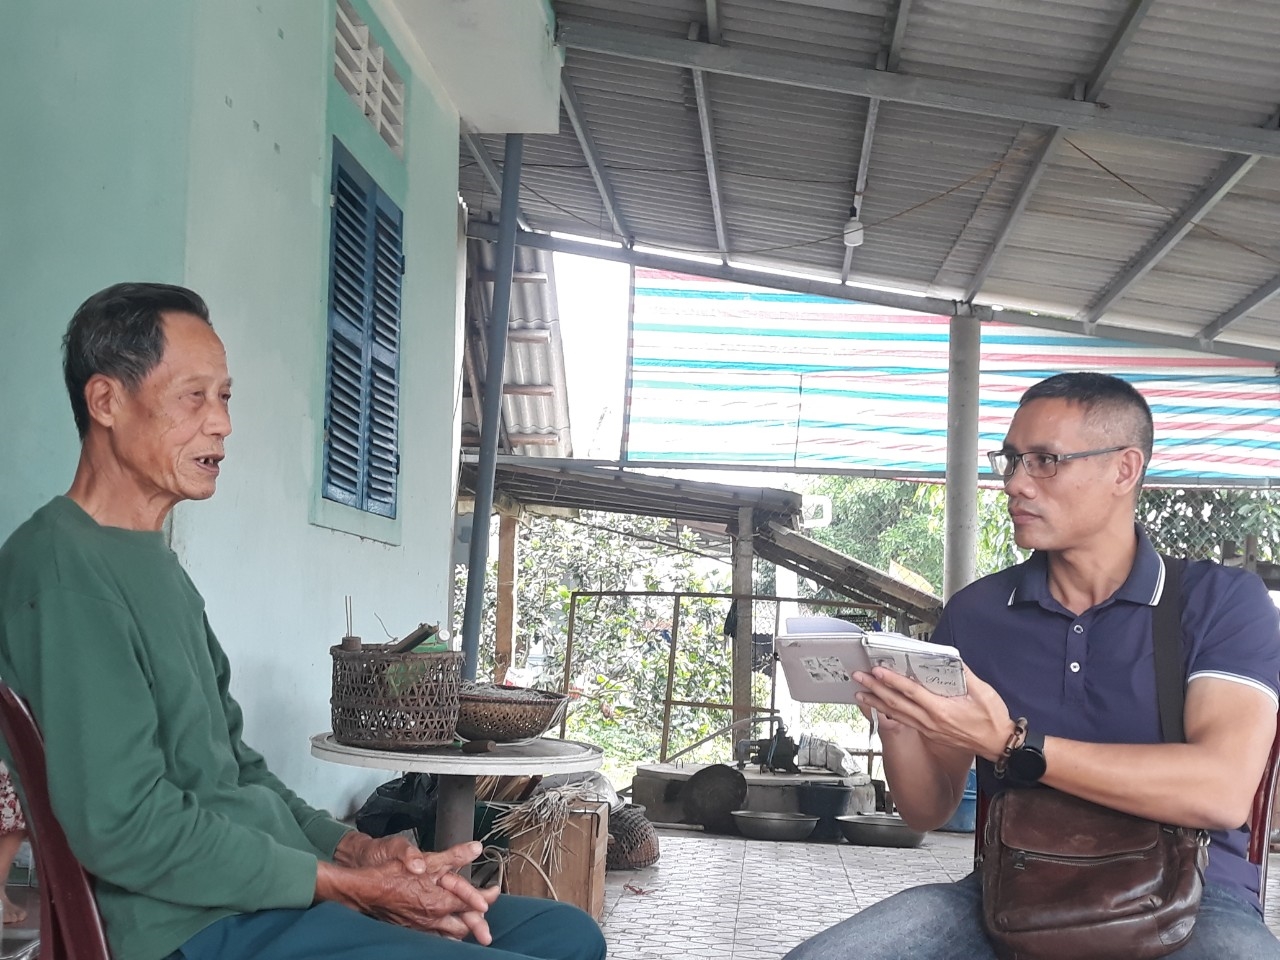 Cựu chiến binh Lê Đa Kiểu ở làng Linh Hải, xã Vĩnh Thủy (Vĩnh Linh) kể lại những ngày tháng khốc liệt bên bờ vĩ tuyến 17